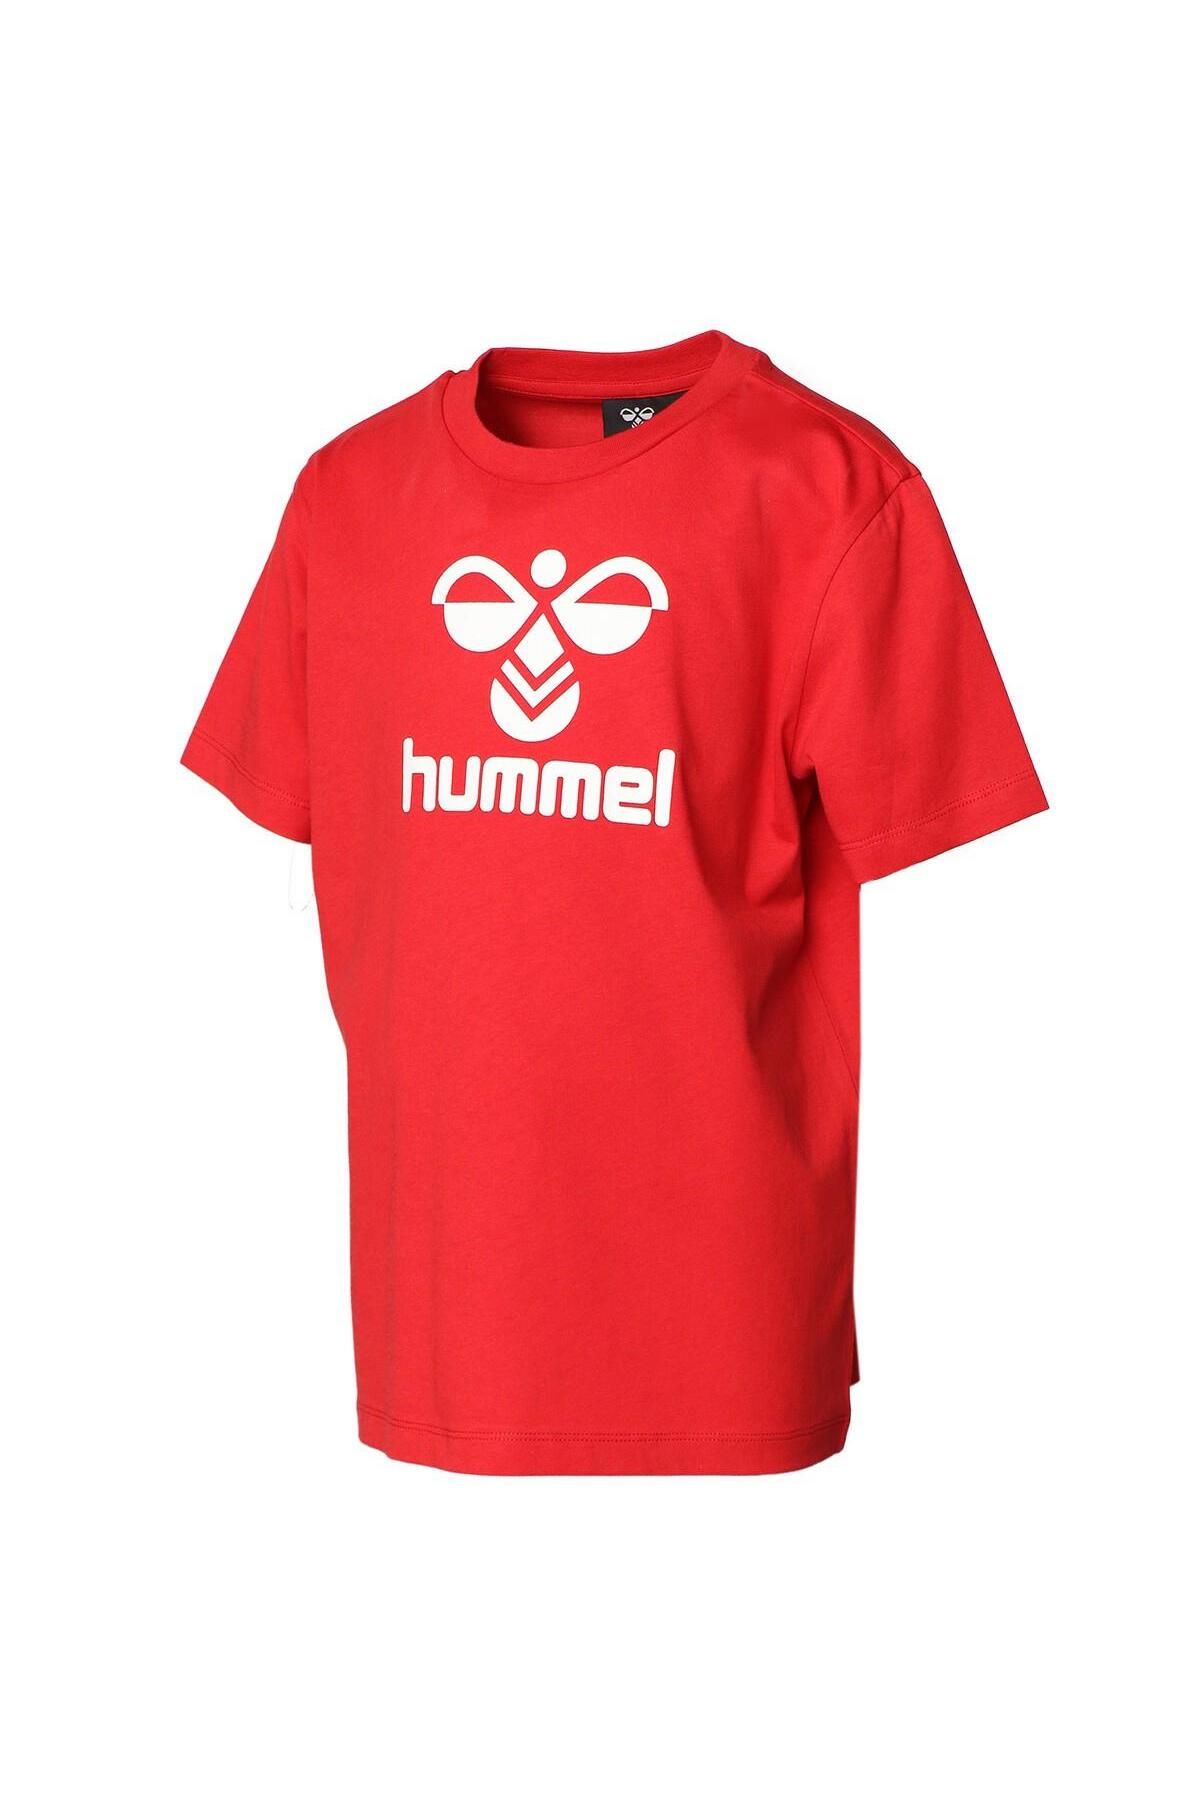 hummel 911653-2220 Lauren Çocuk T-shirt